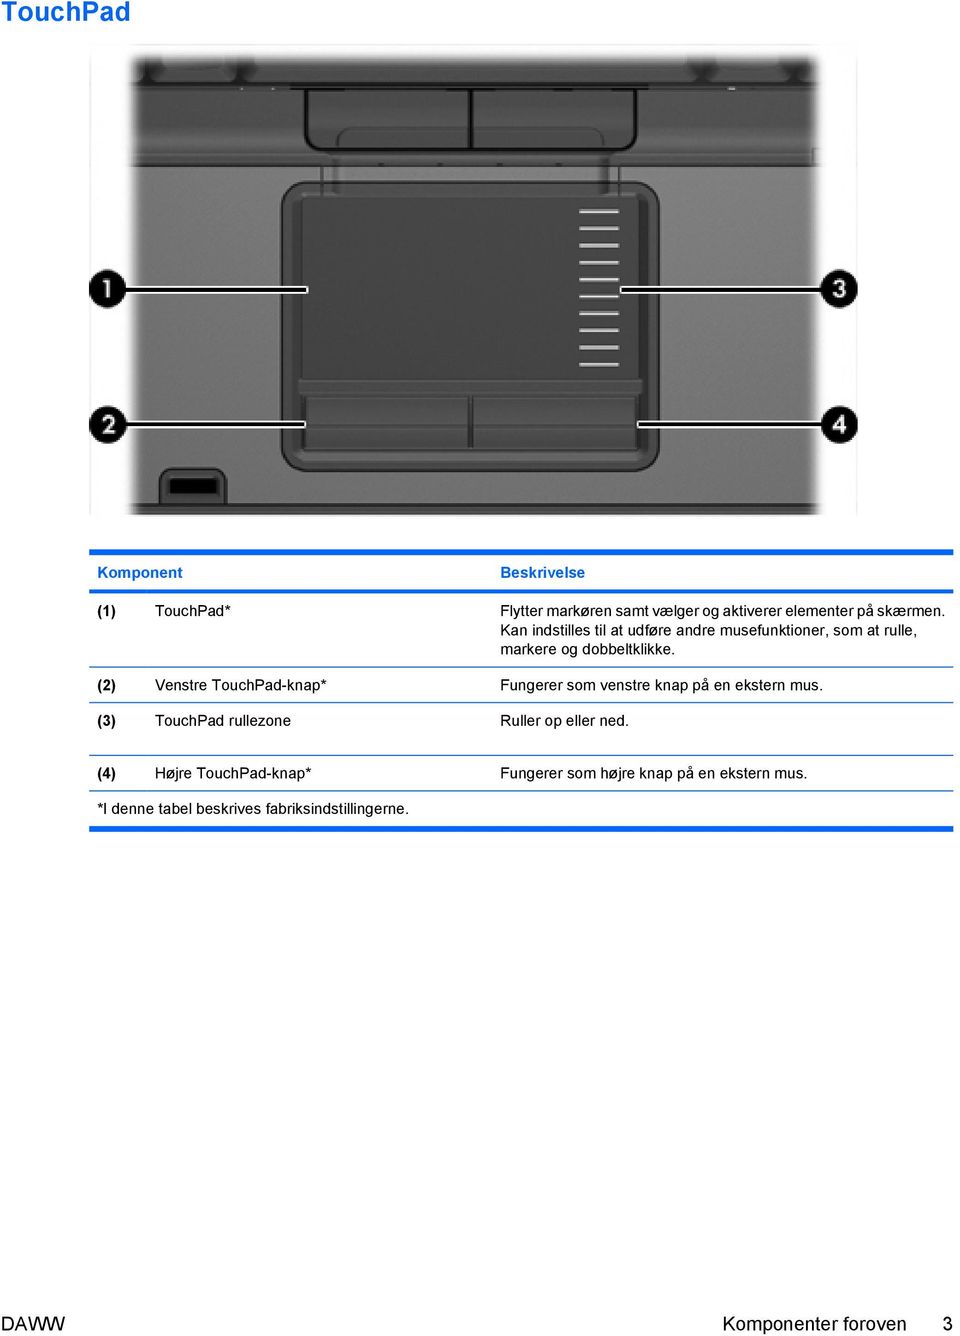 (2) Venstre TouchPad-knap* Fungerer som venstre knap på en ekstern mus.